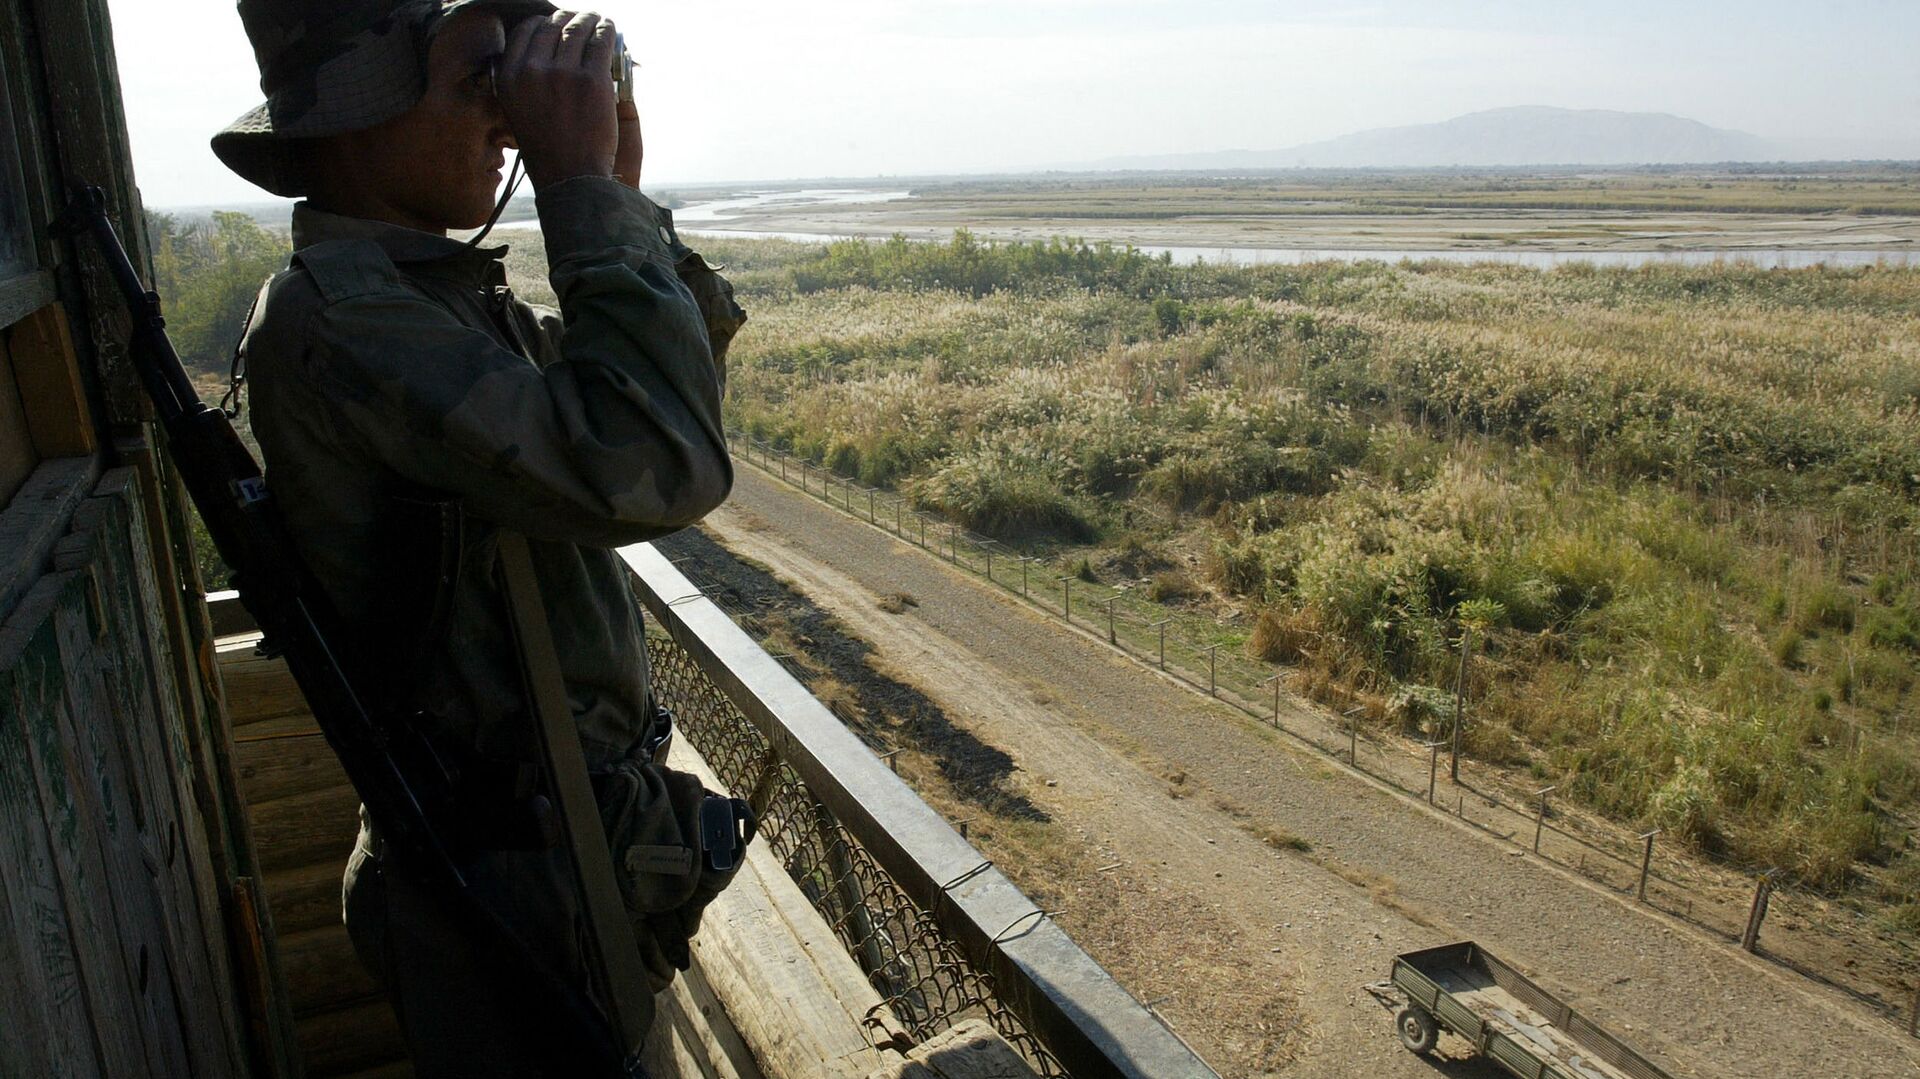 Солдат таджикской пограничной службы патрулирует реку Пяндж на границе с Афганистаном в 220 км от Душанбе - Sputnik Азербайджан, 1920, 01.05.2021